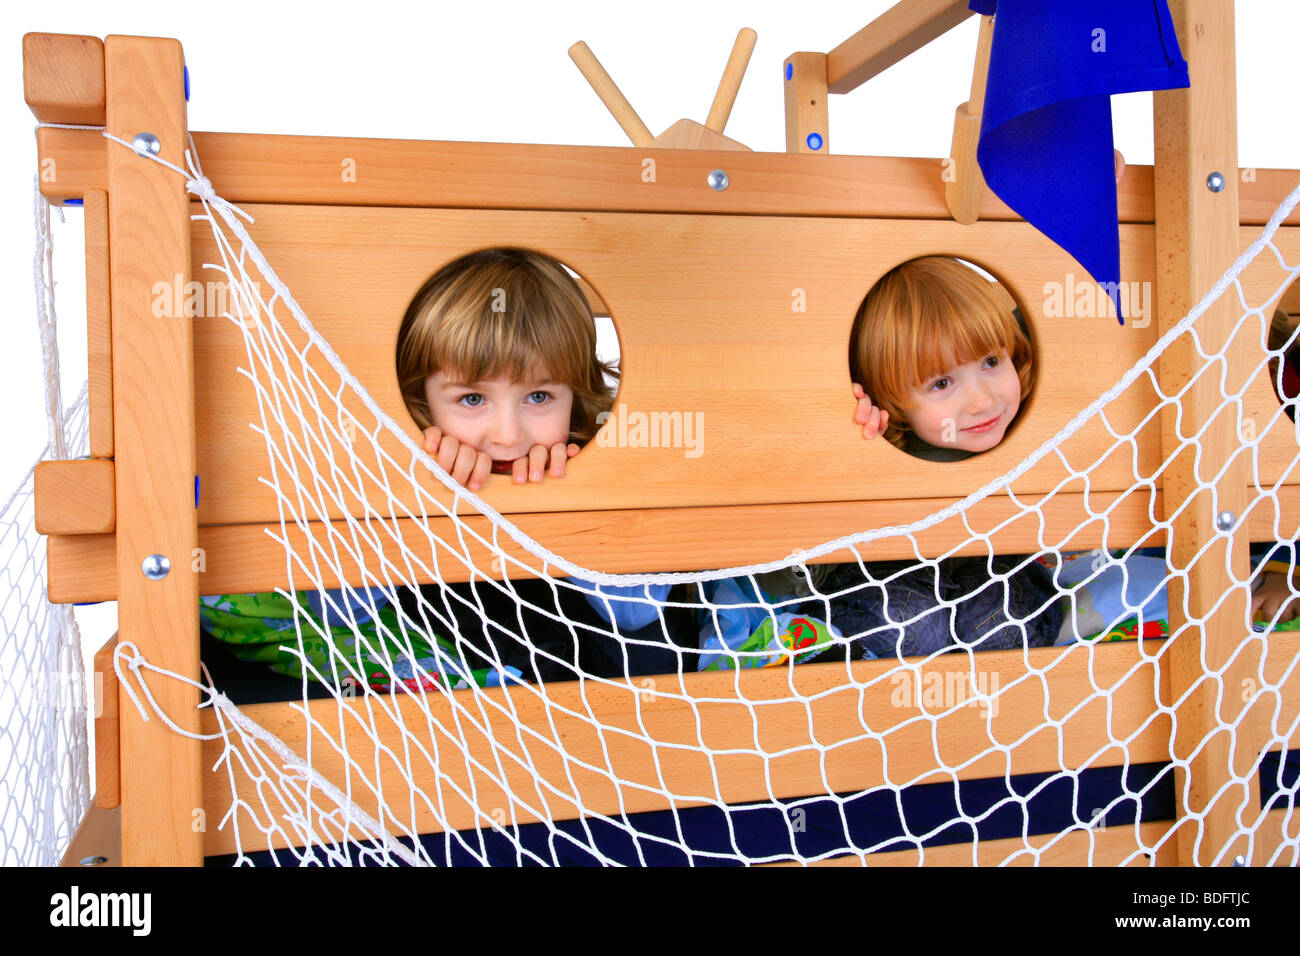 Kinder spielen in ein Billi-Bolli Hochbett suchen Durchgangsbohrungen Stockfoto